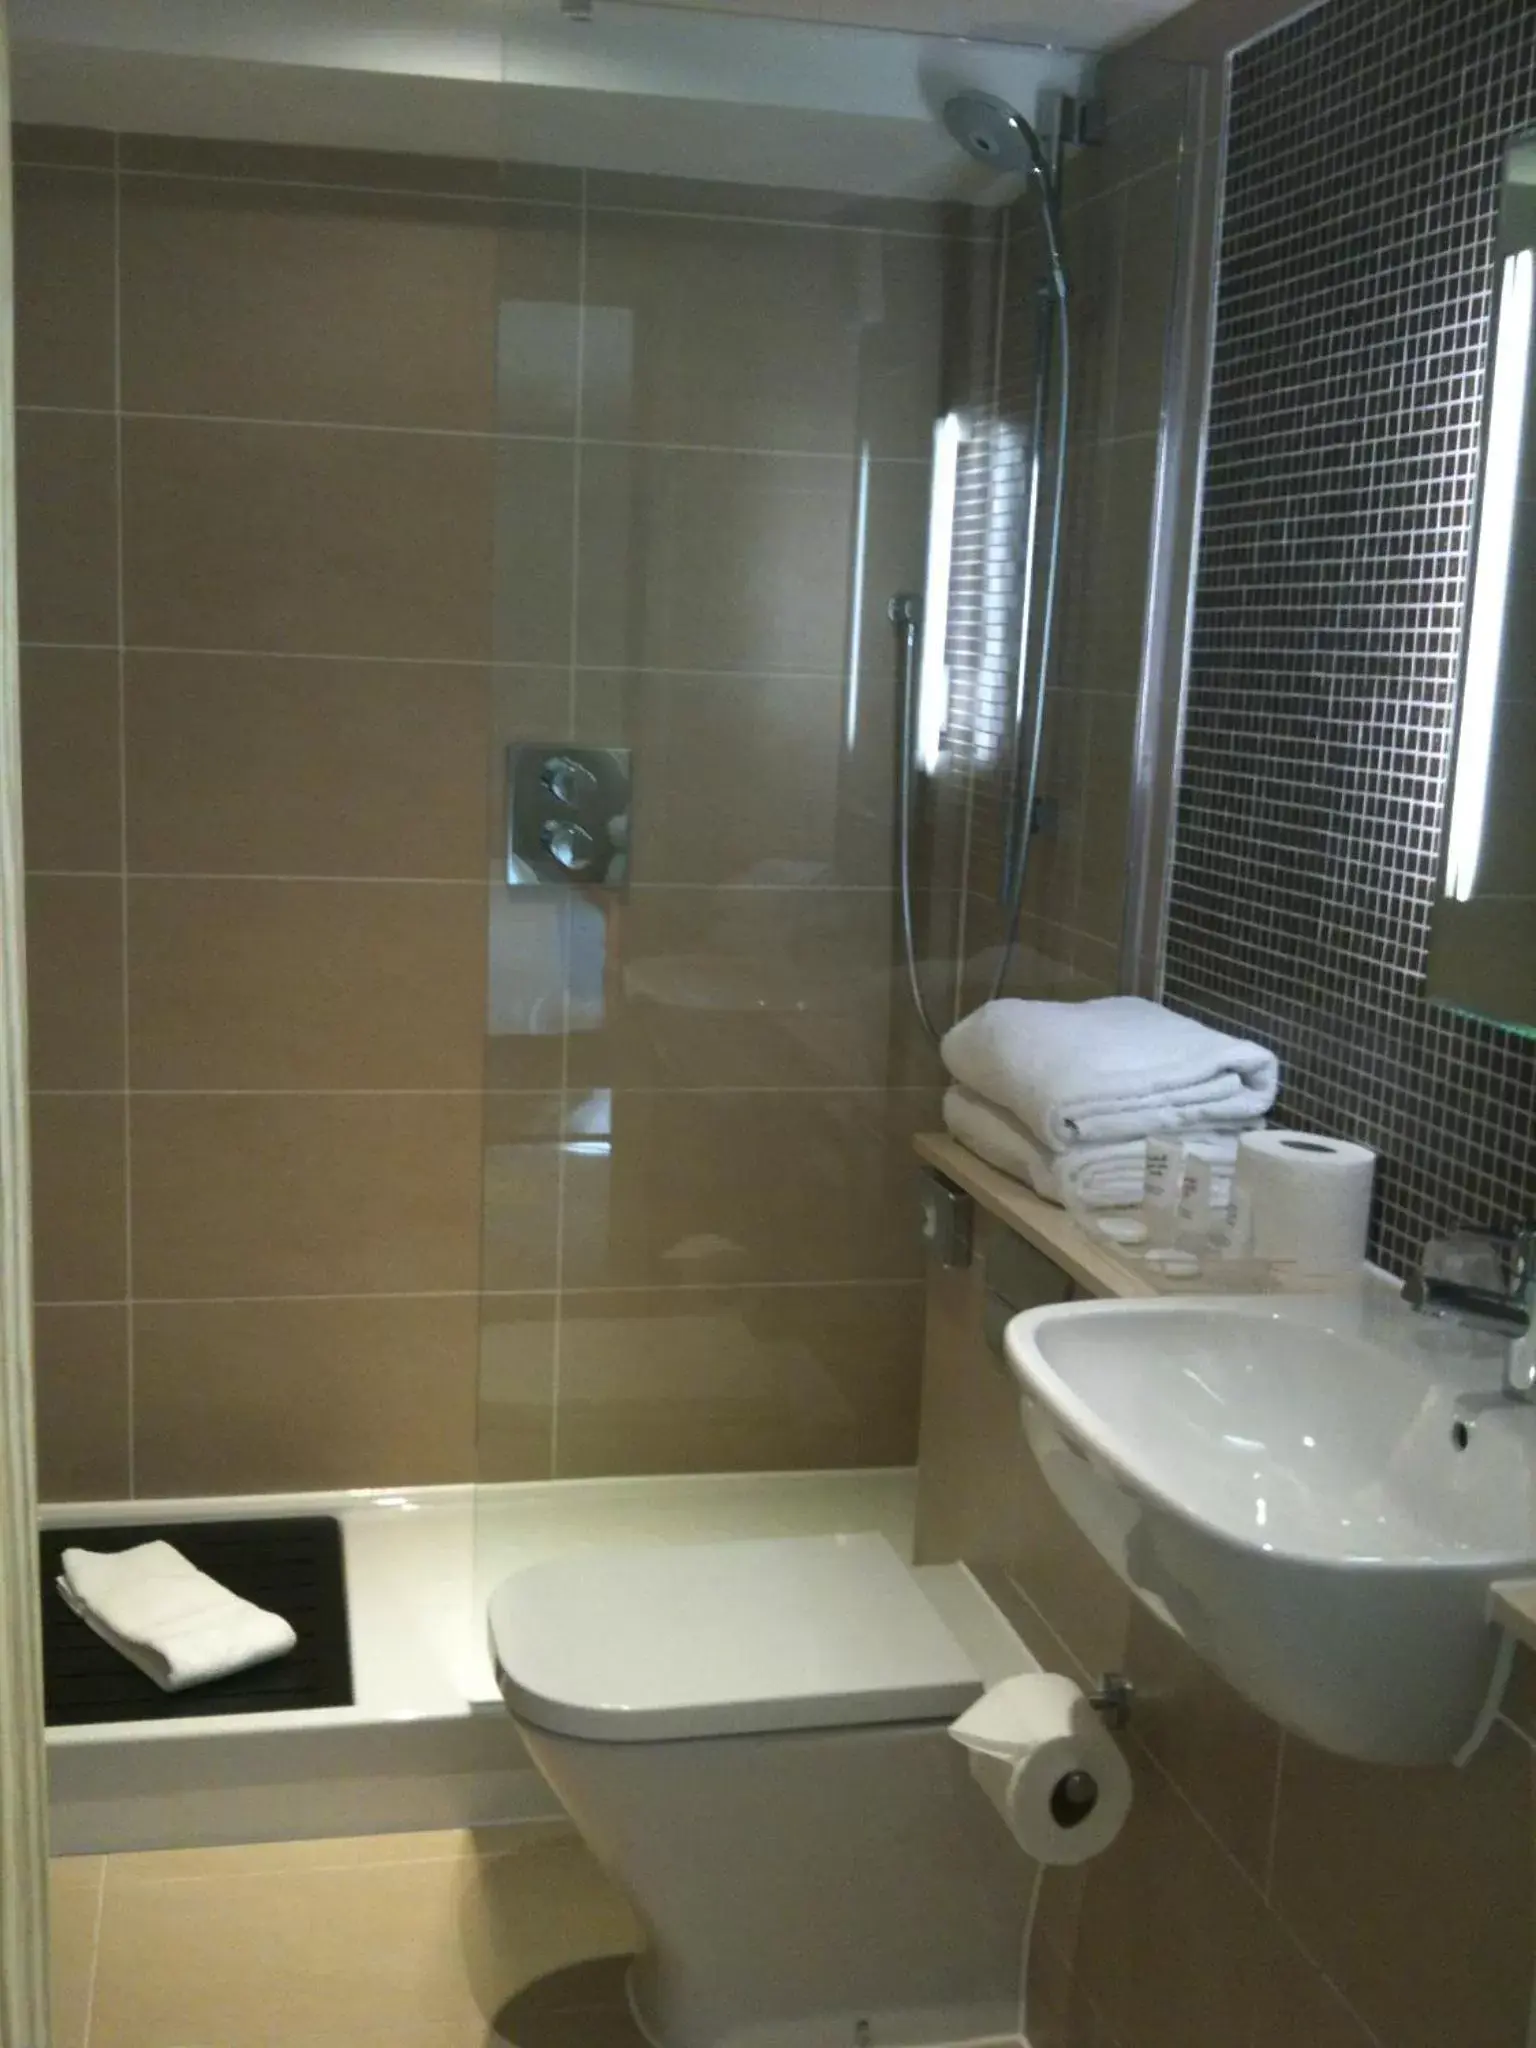 Bathroom in Quy Mill Hotel & Spa, Cambridge